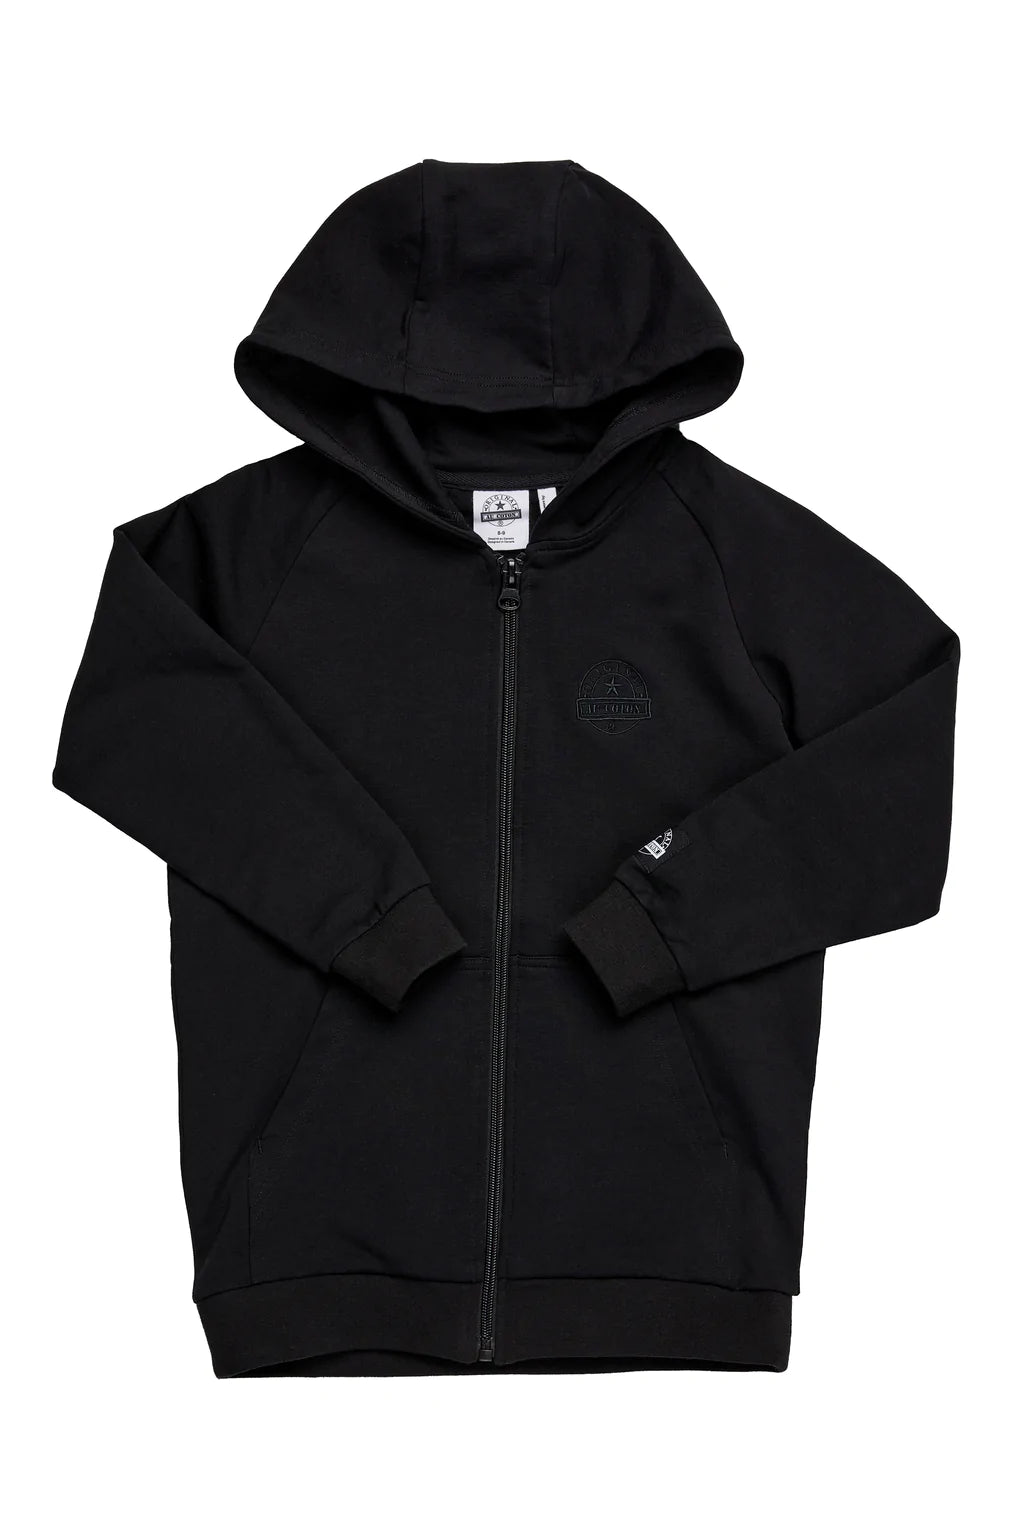 Veste hoodie Original au coton Enfant Noire